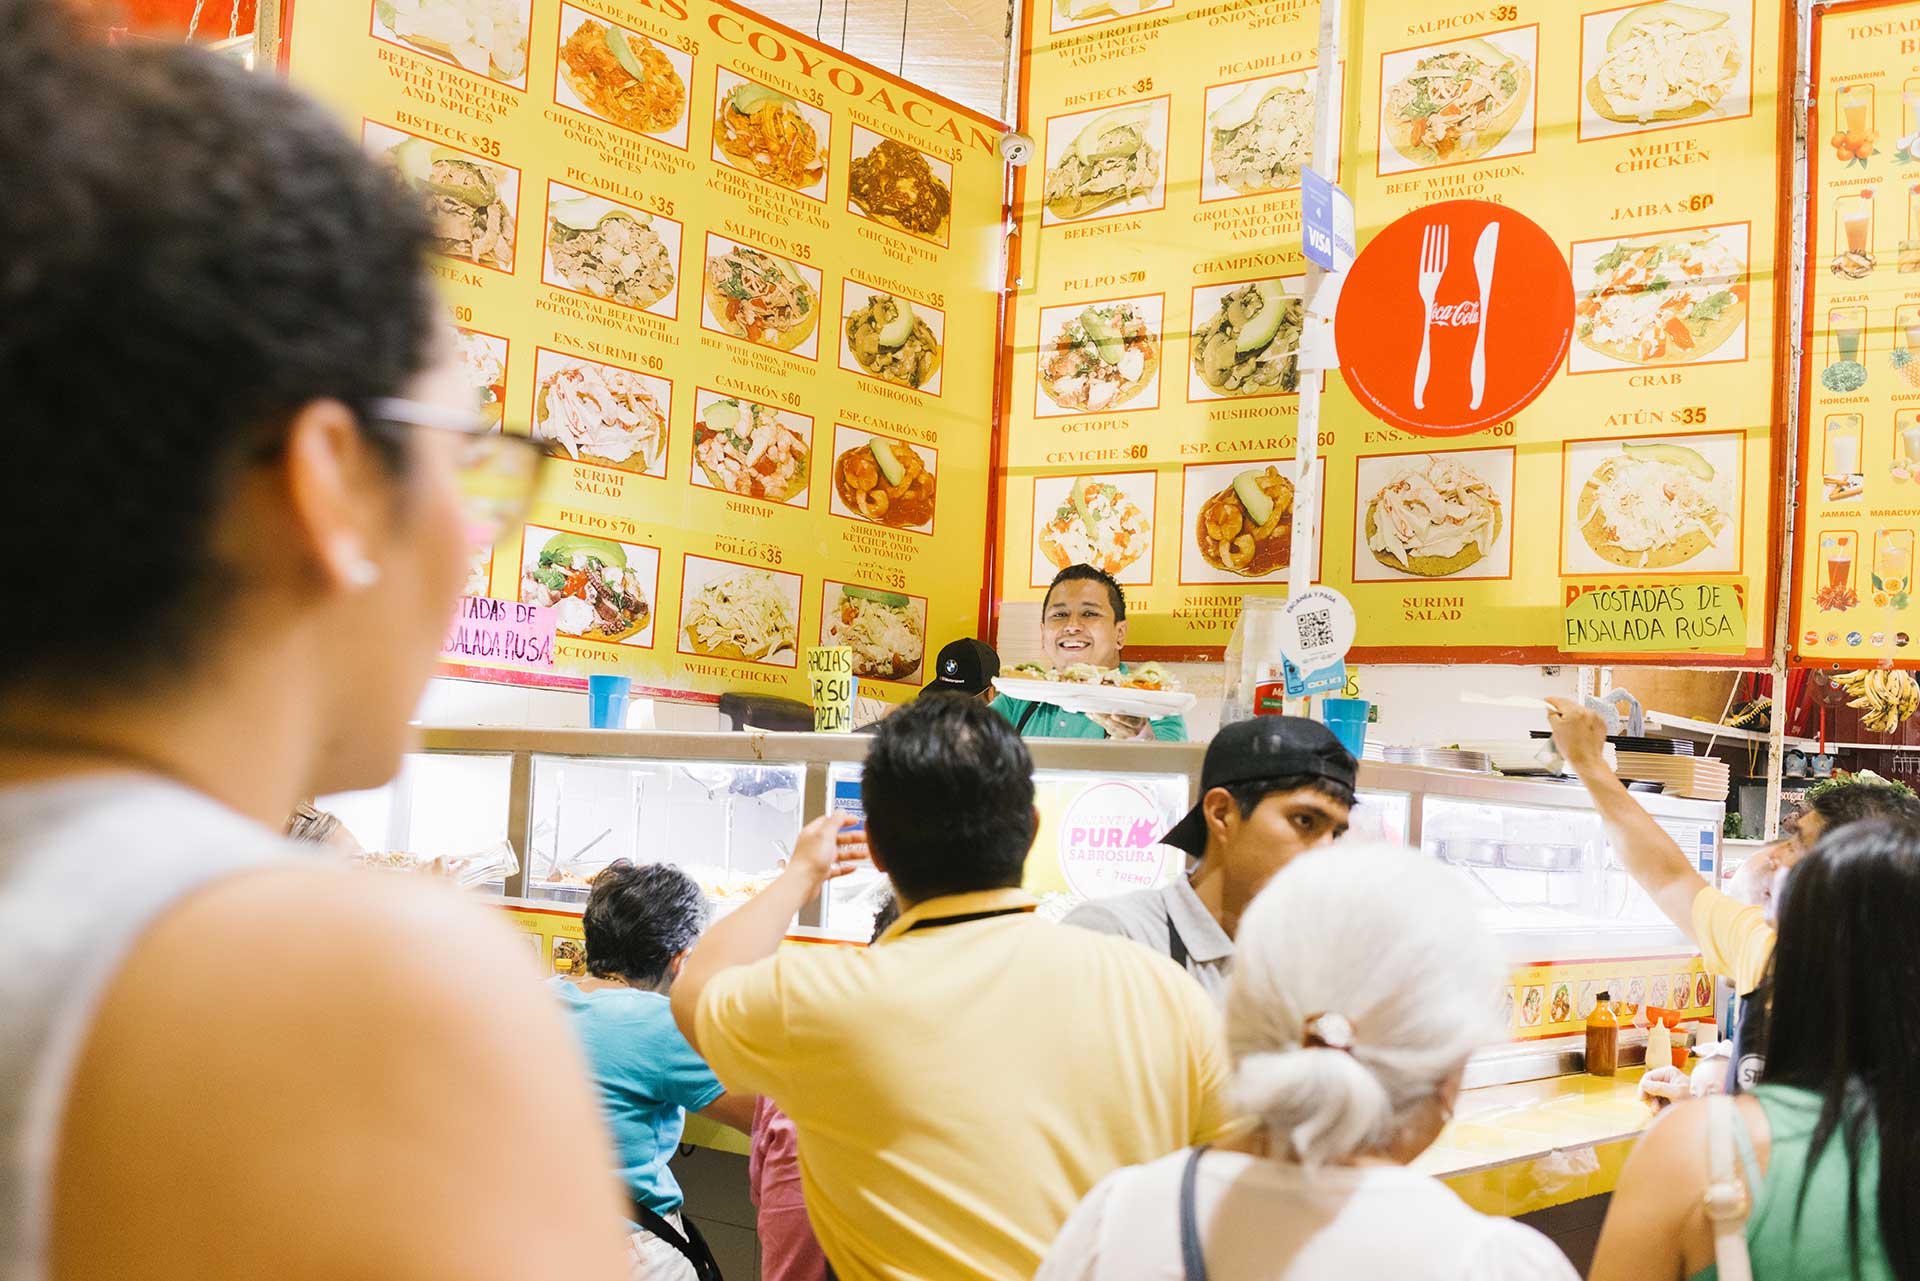 People queue in front of the menu at Tostadas Coyoacan Las Originales, Mexico City